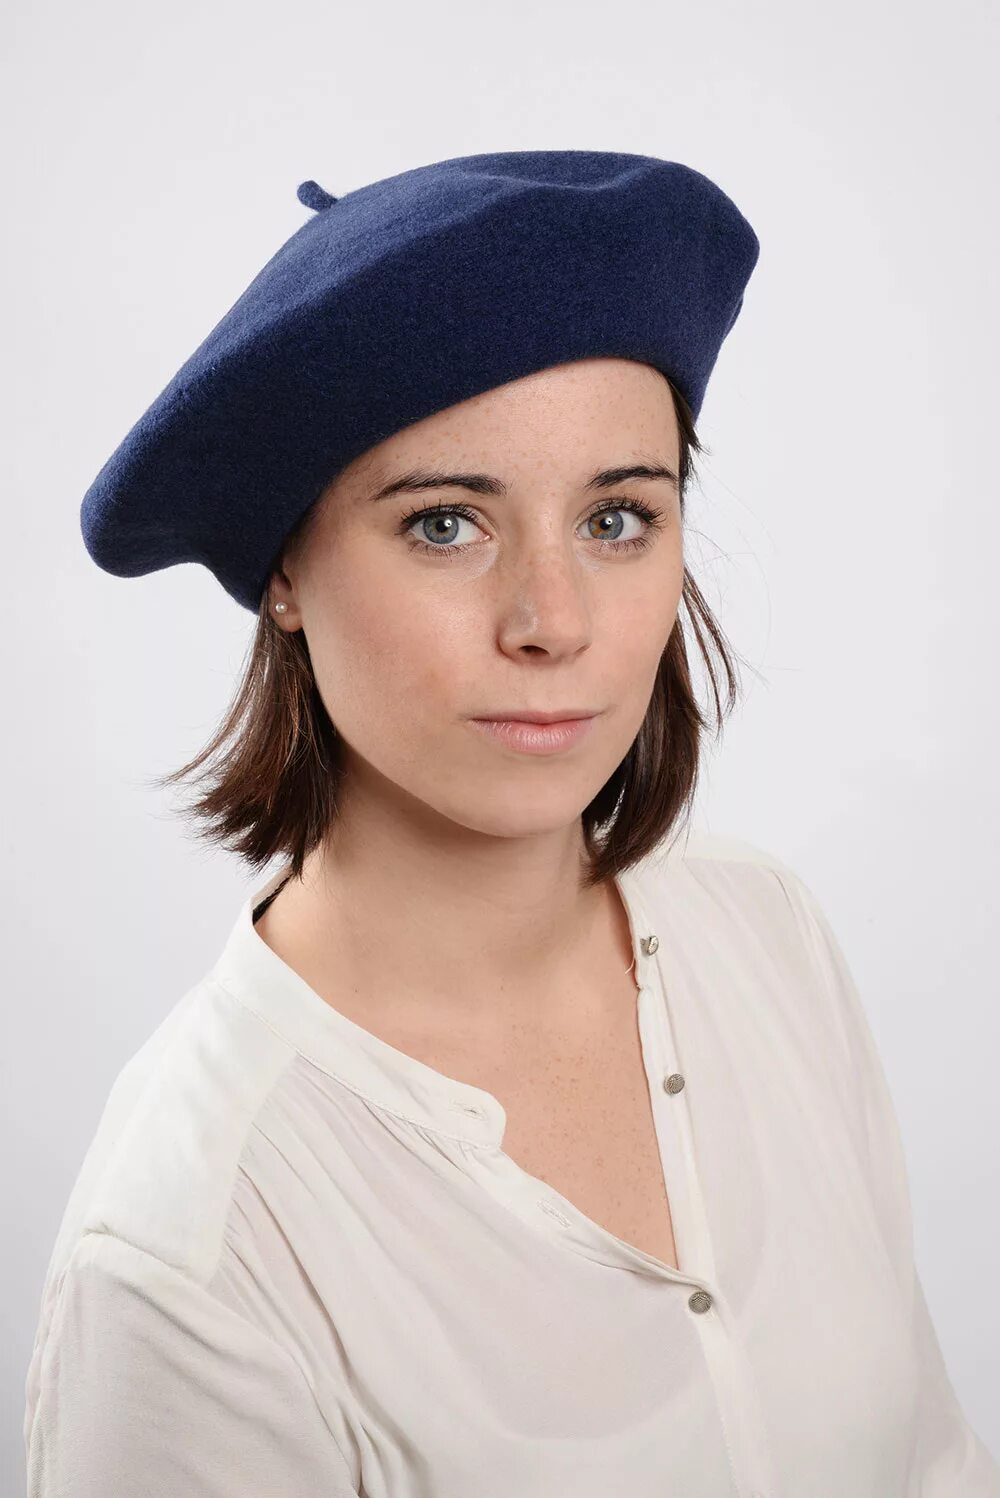 Le Beret Francais берет. Французская беретка 2021. Головной убор француженок. Французские шапки женские. Берет плотный